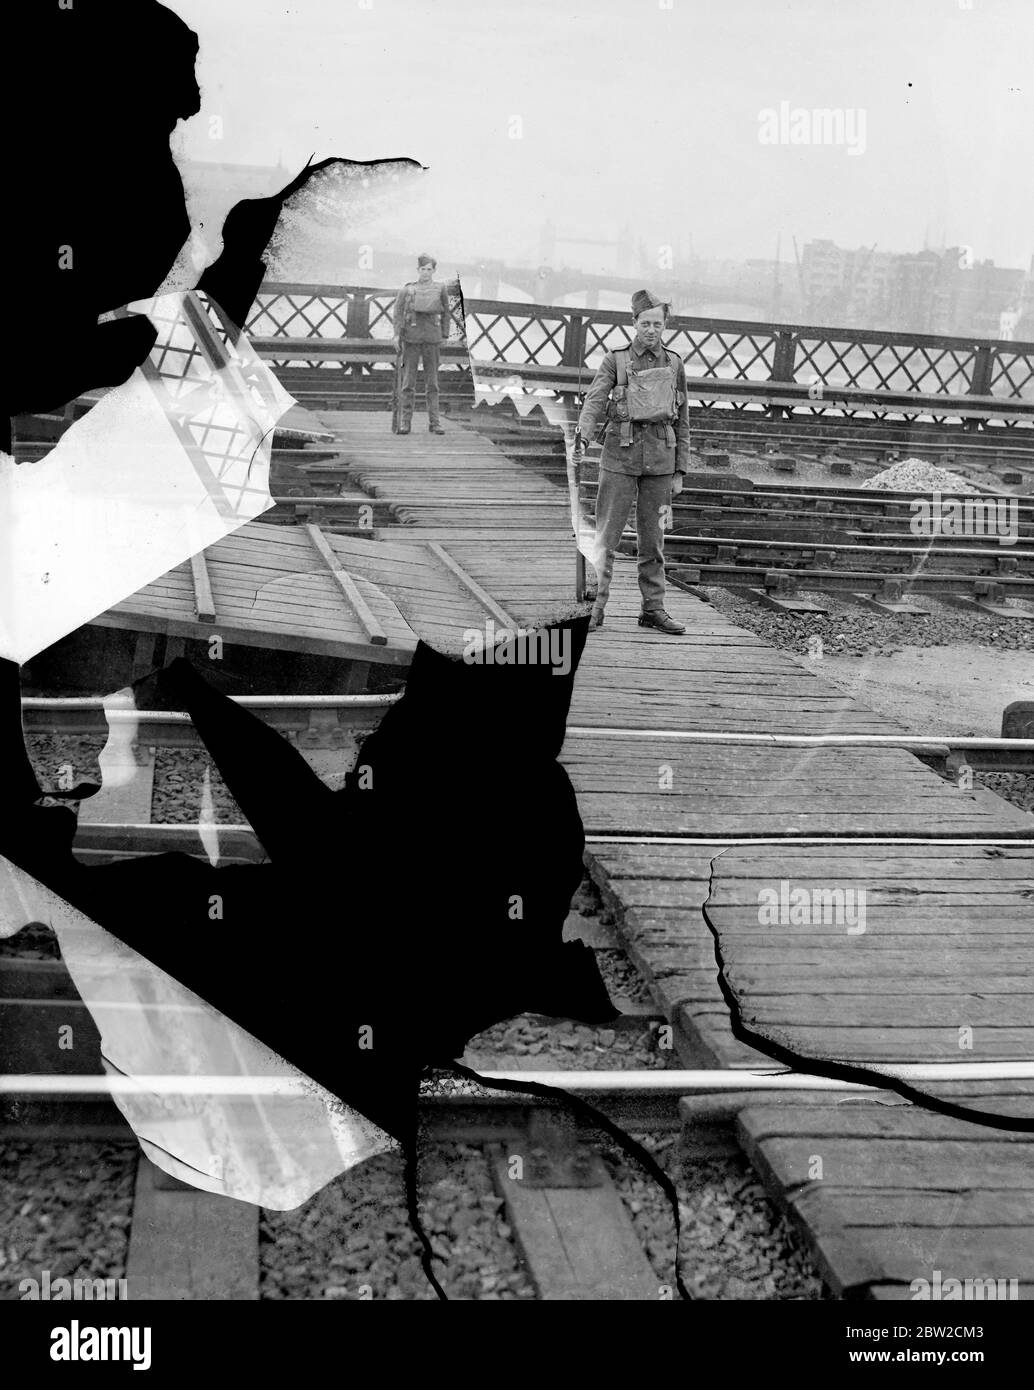 An wichtigen Punkten Londons, einschließlich Bahnhöfen, Warenhöfen und wichtigen städtischen Gebäuden, wurden Militärwachen installiert. Militärwache auf einer Eisenbahnbrücke über die Themse. Bis 30. August 1939 Stockfoto